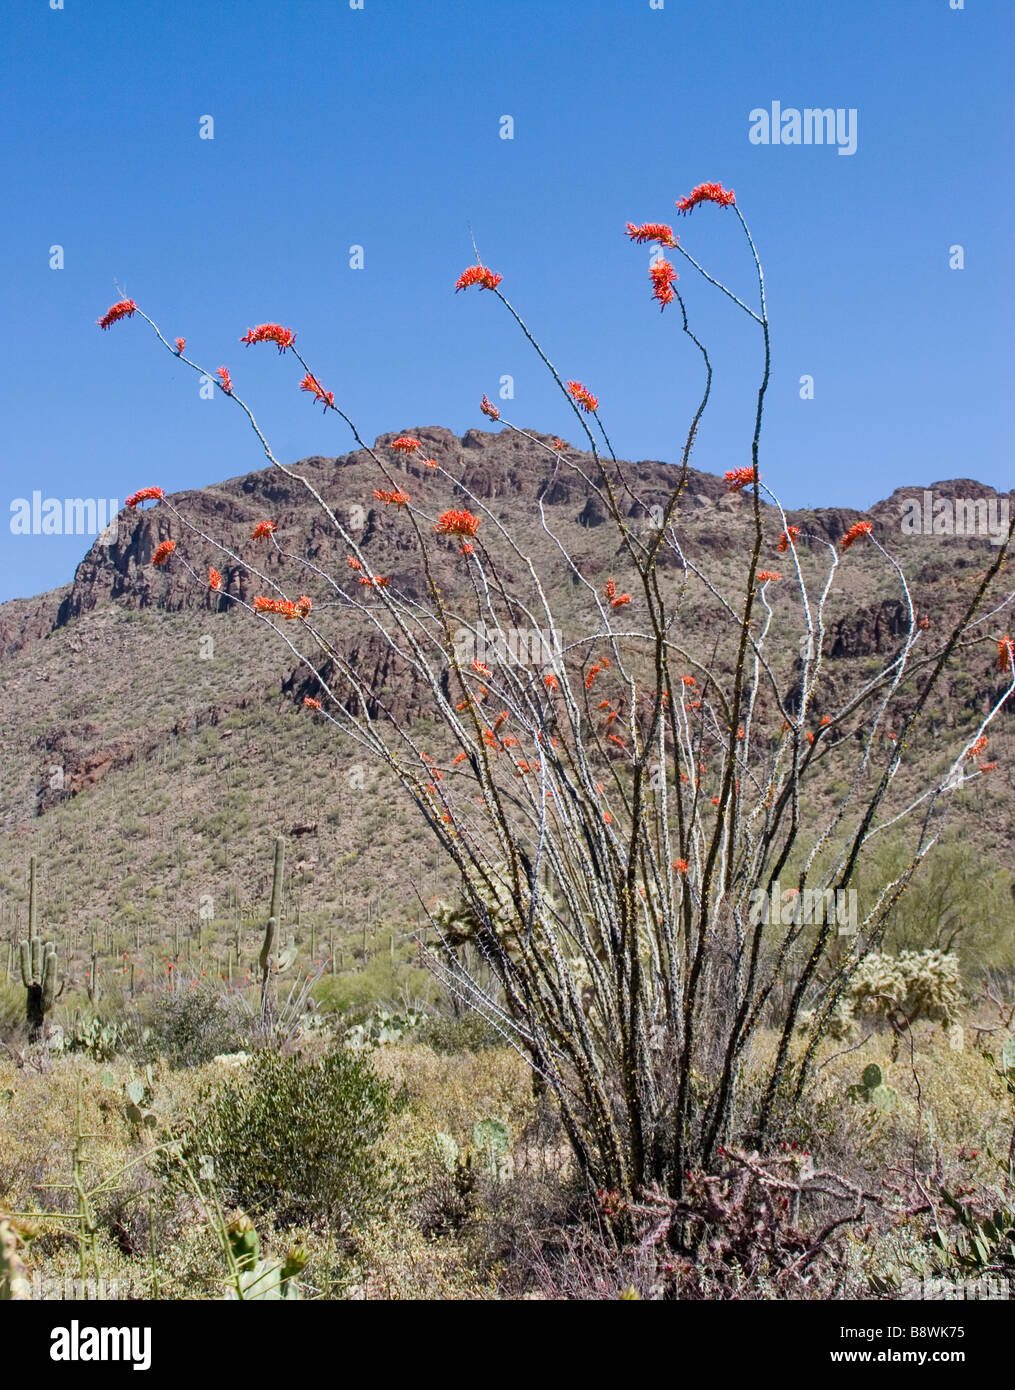 Ocotillo Fouquieria Splendis flowering in desert setting against mountain range Stock Photo